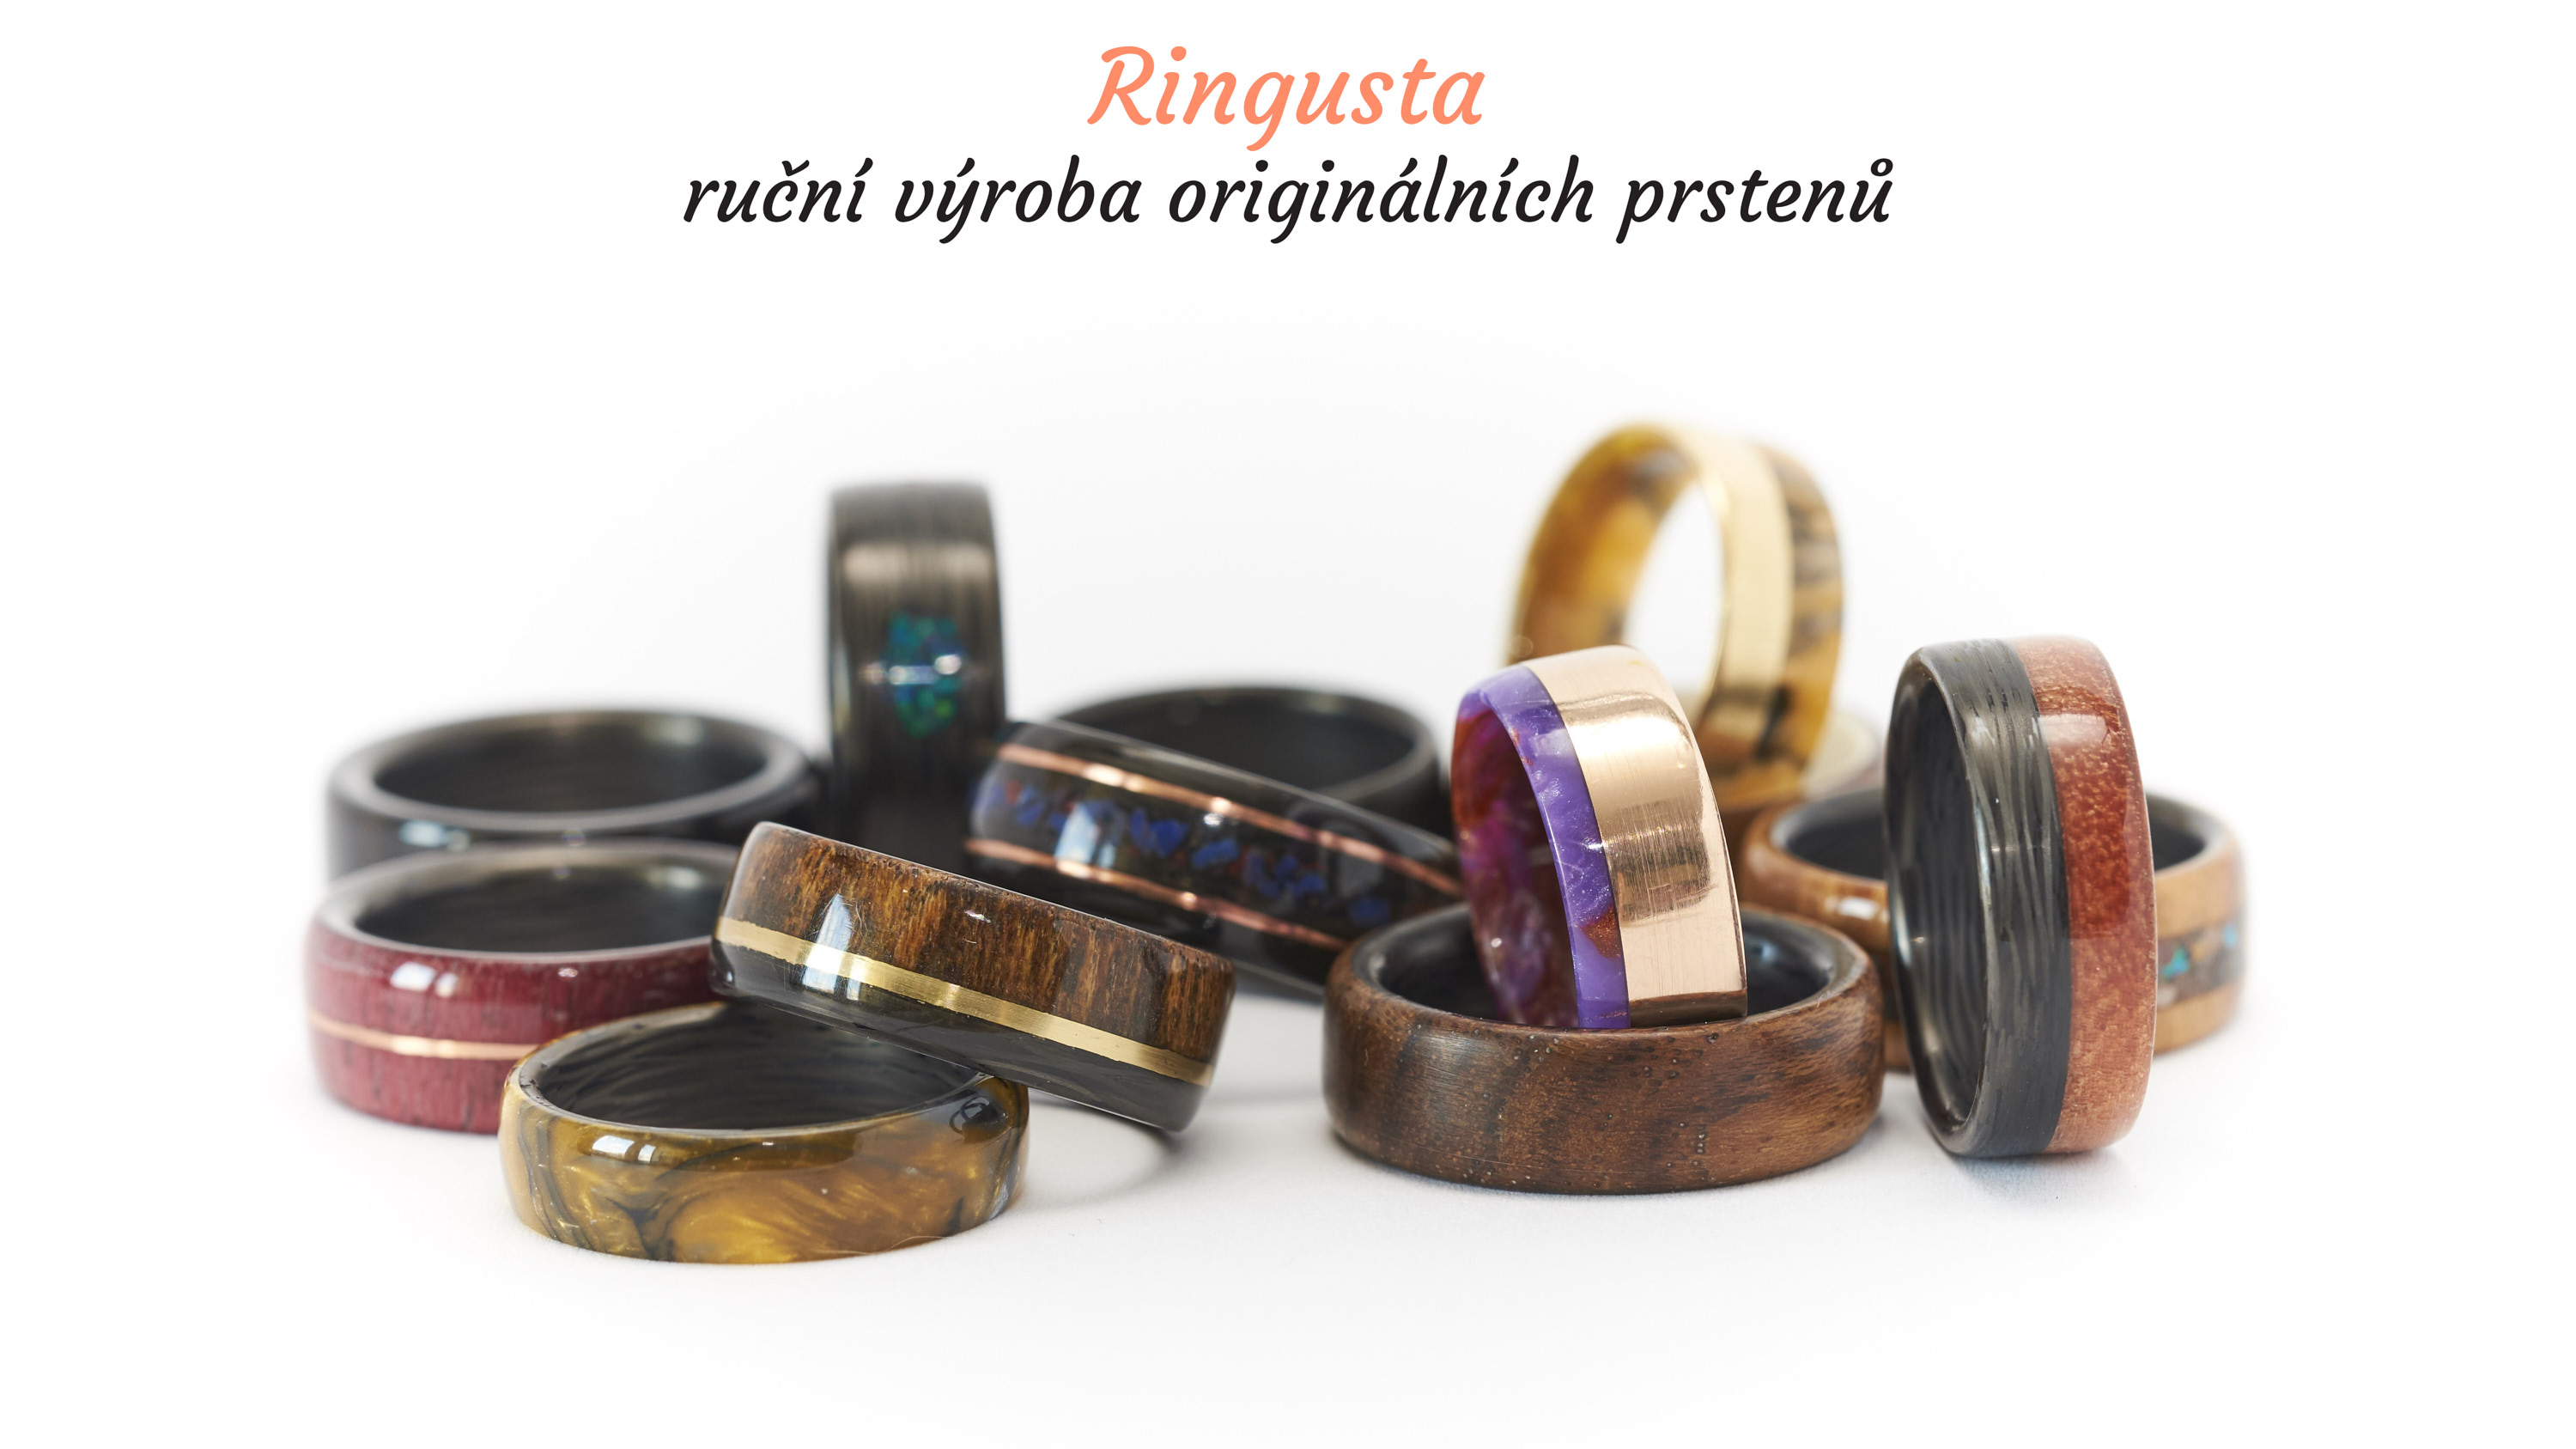 Ruční výroba originálních prstenů z karbonu, dřeva a dalších materiálů